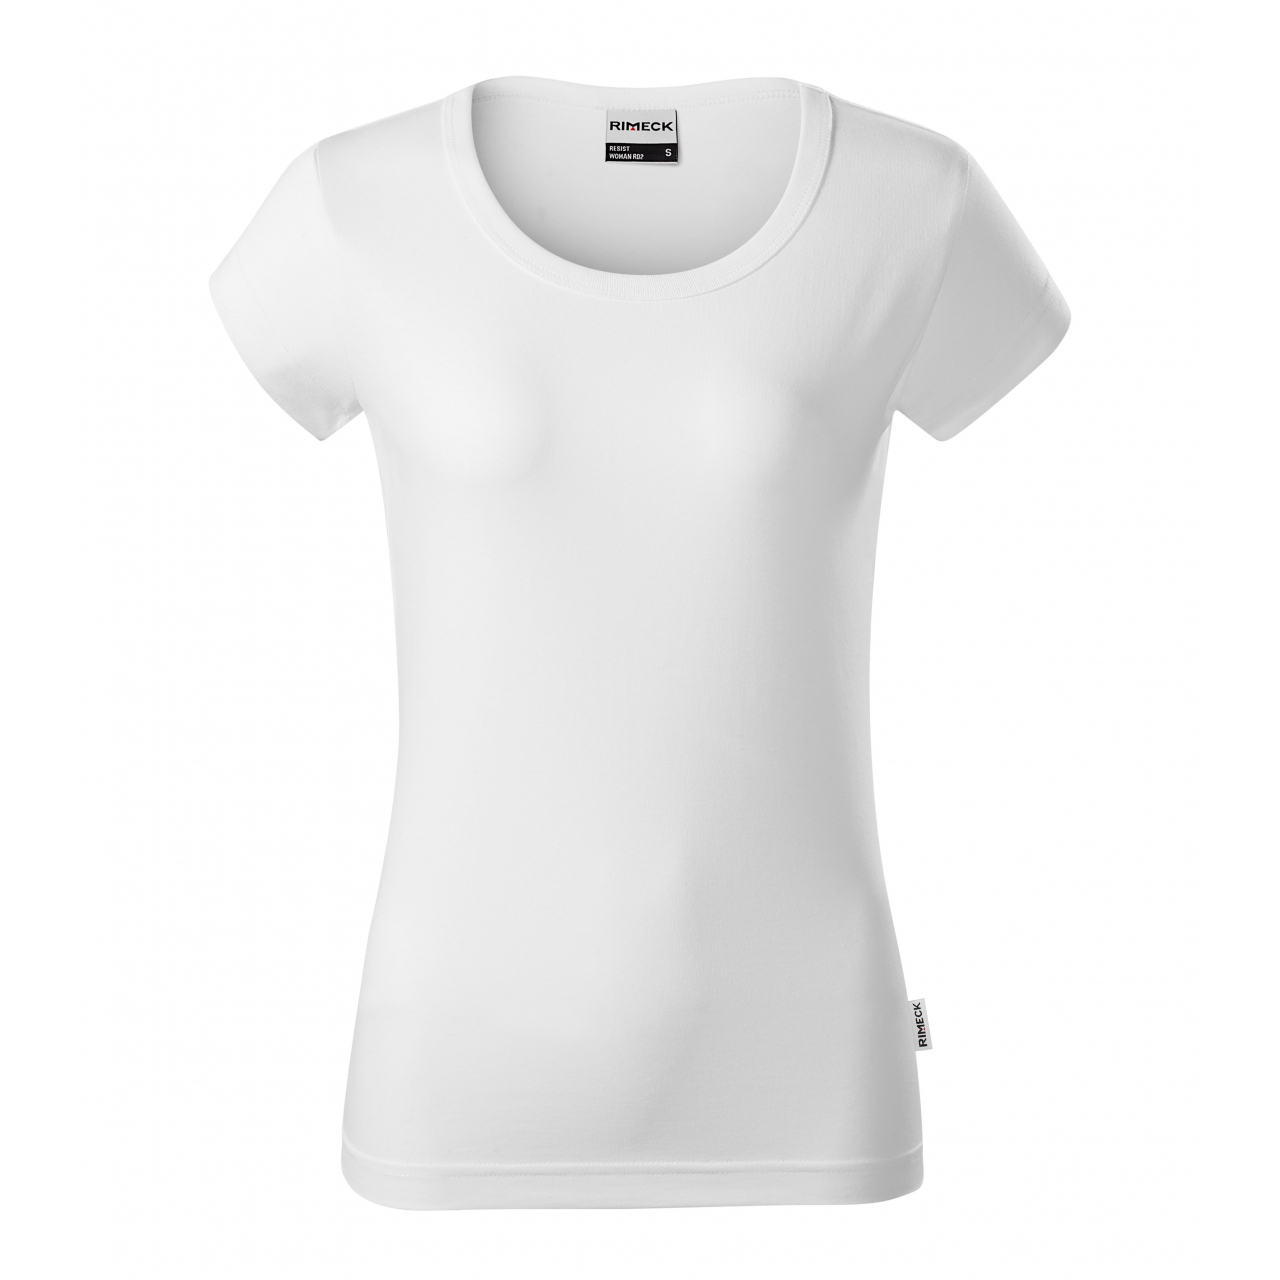 Tričko dámské Rimeck Resist BL - bílé, XL